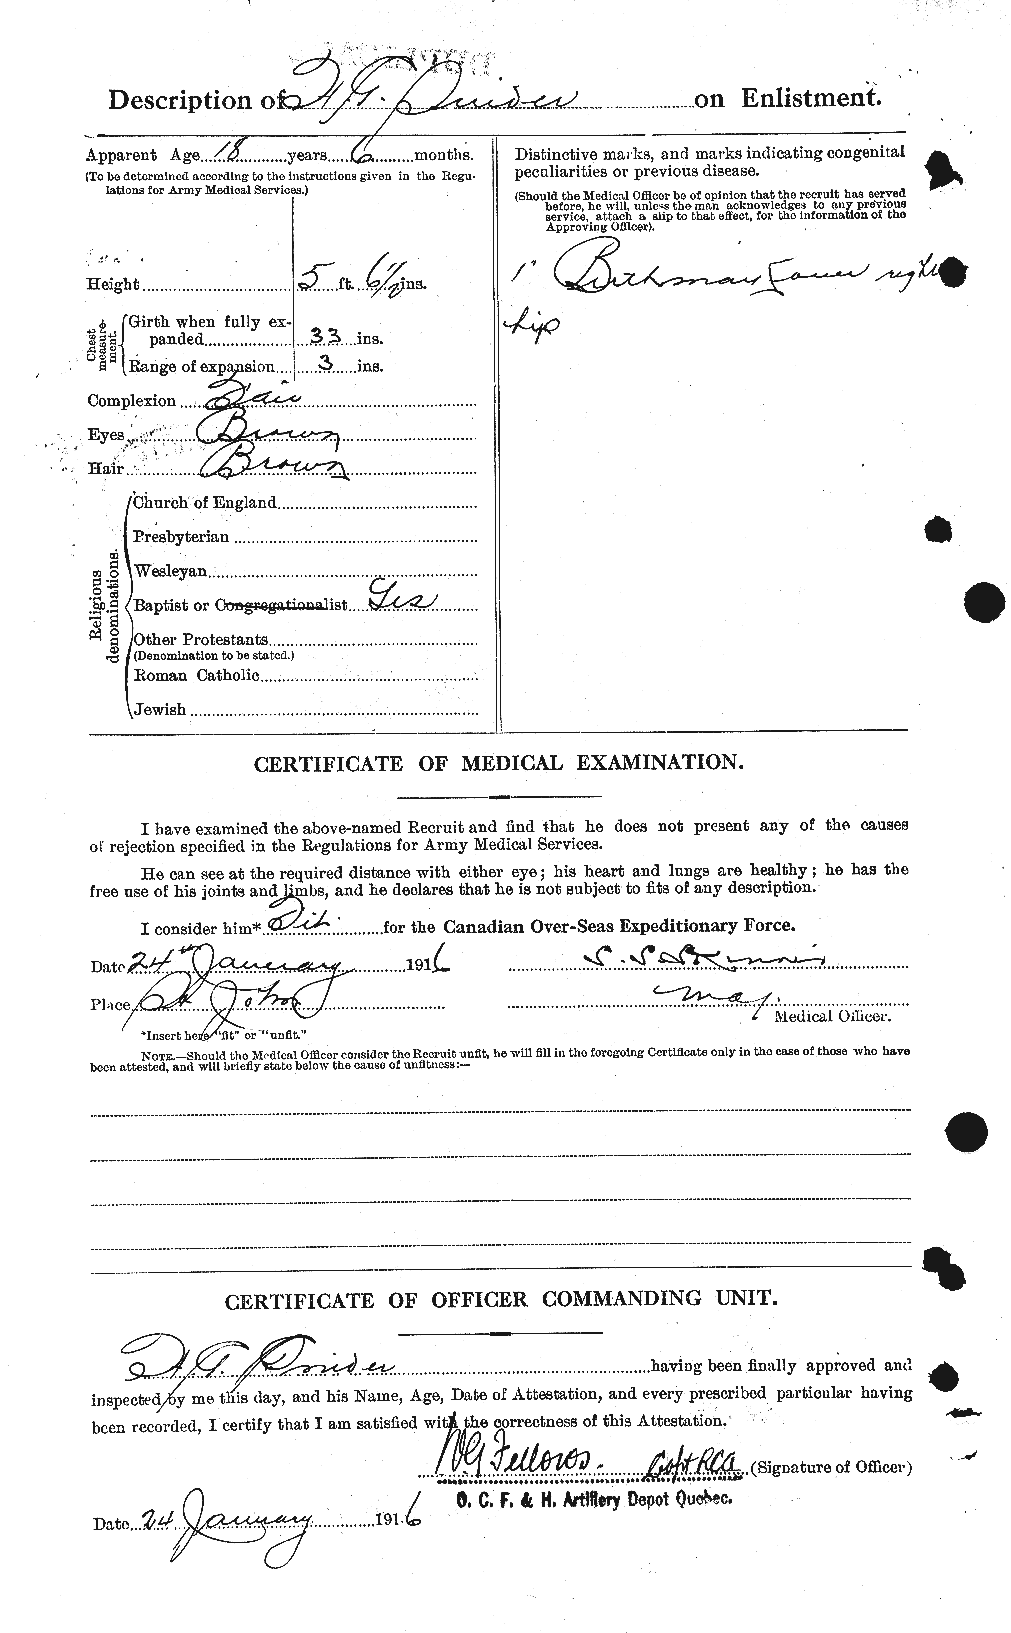 Dossiers du Personnel de la Première Guerre mondiale - CEC 110027b